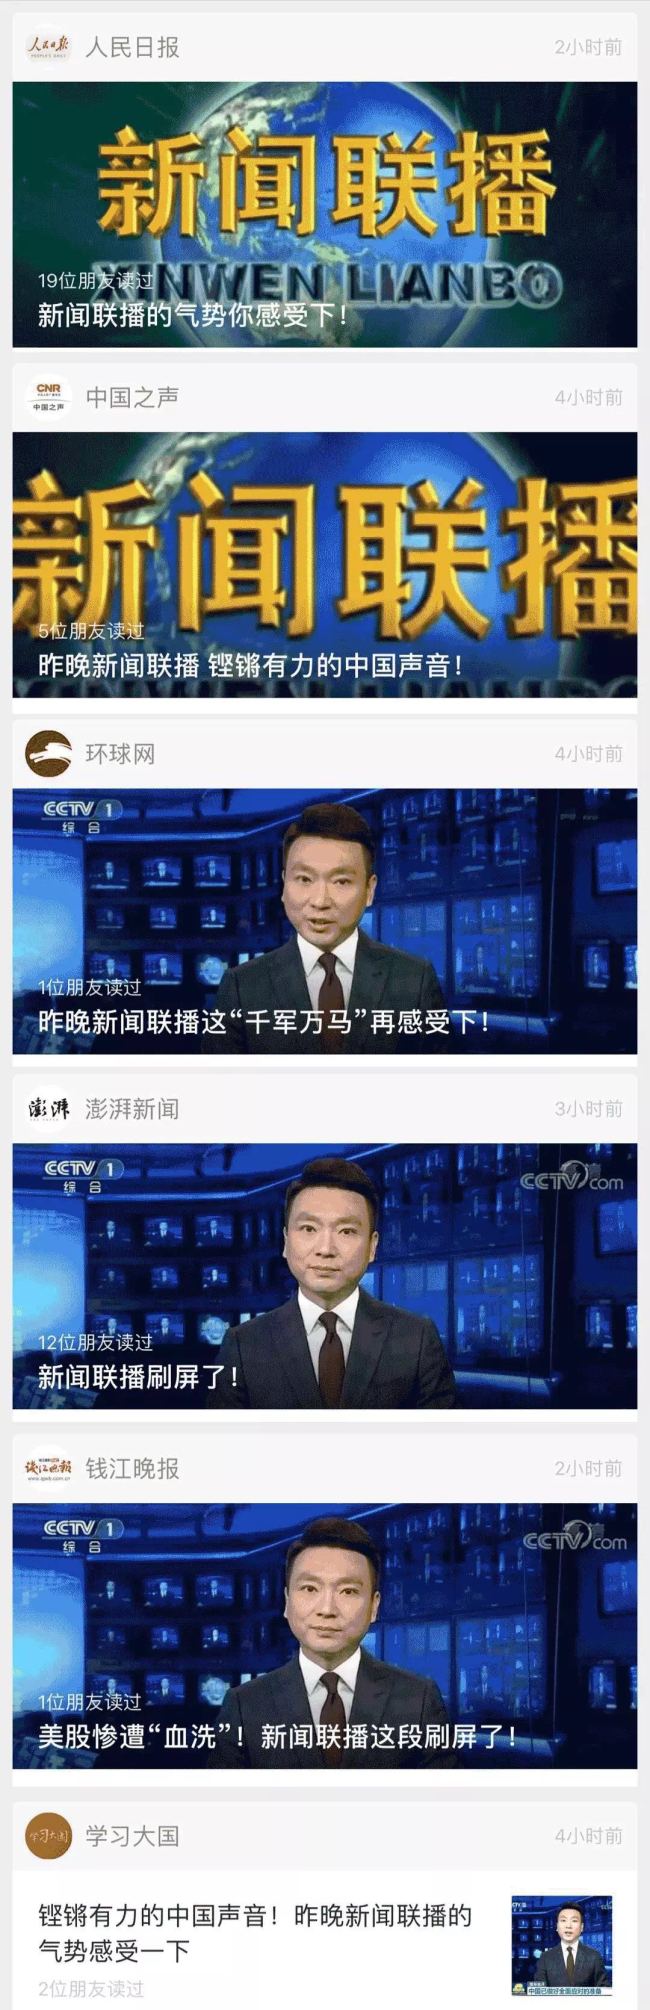 Derrière la grande attention du public au Journal télévisé se cache l’énergie débordante de la Chine et son allure martiale en avant